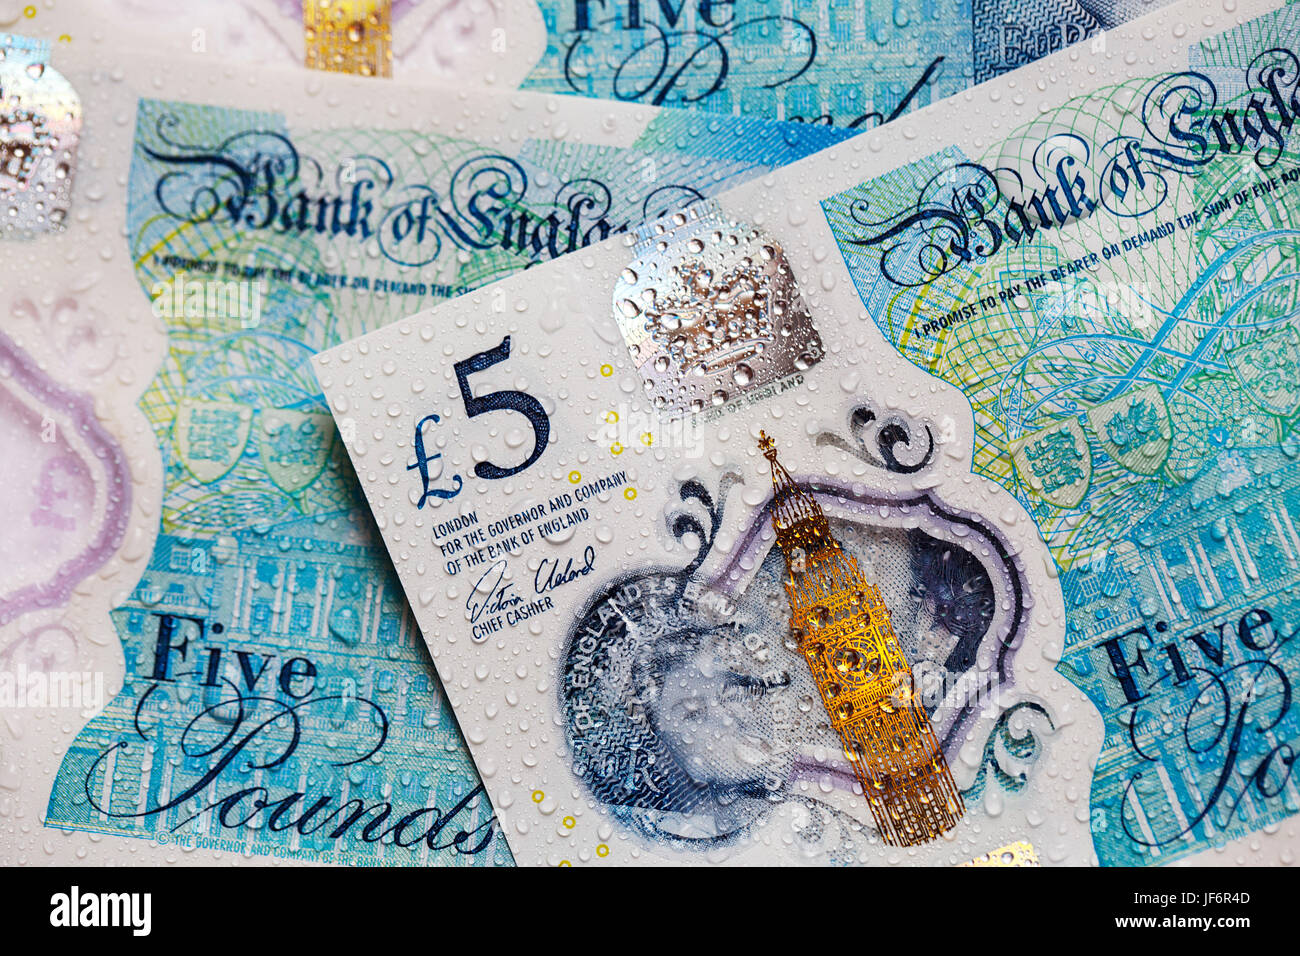 La moneda británica - Nota de cinco libras con la nueva moneda libra 2017 Foto de stock